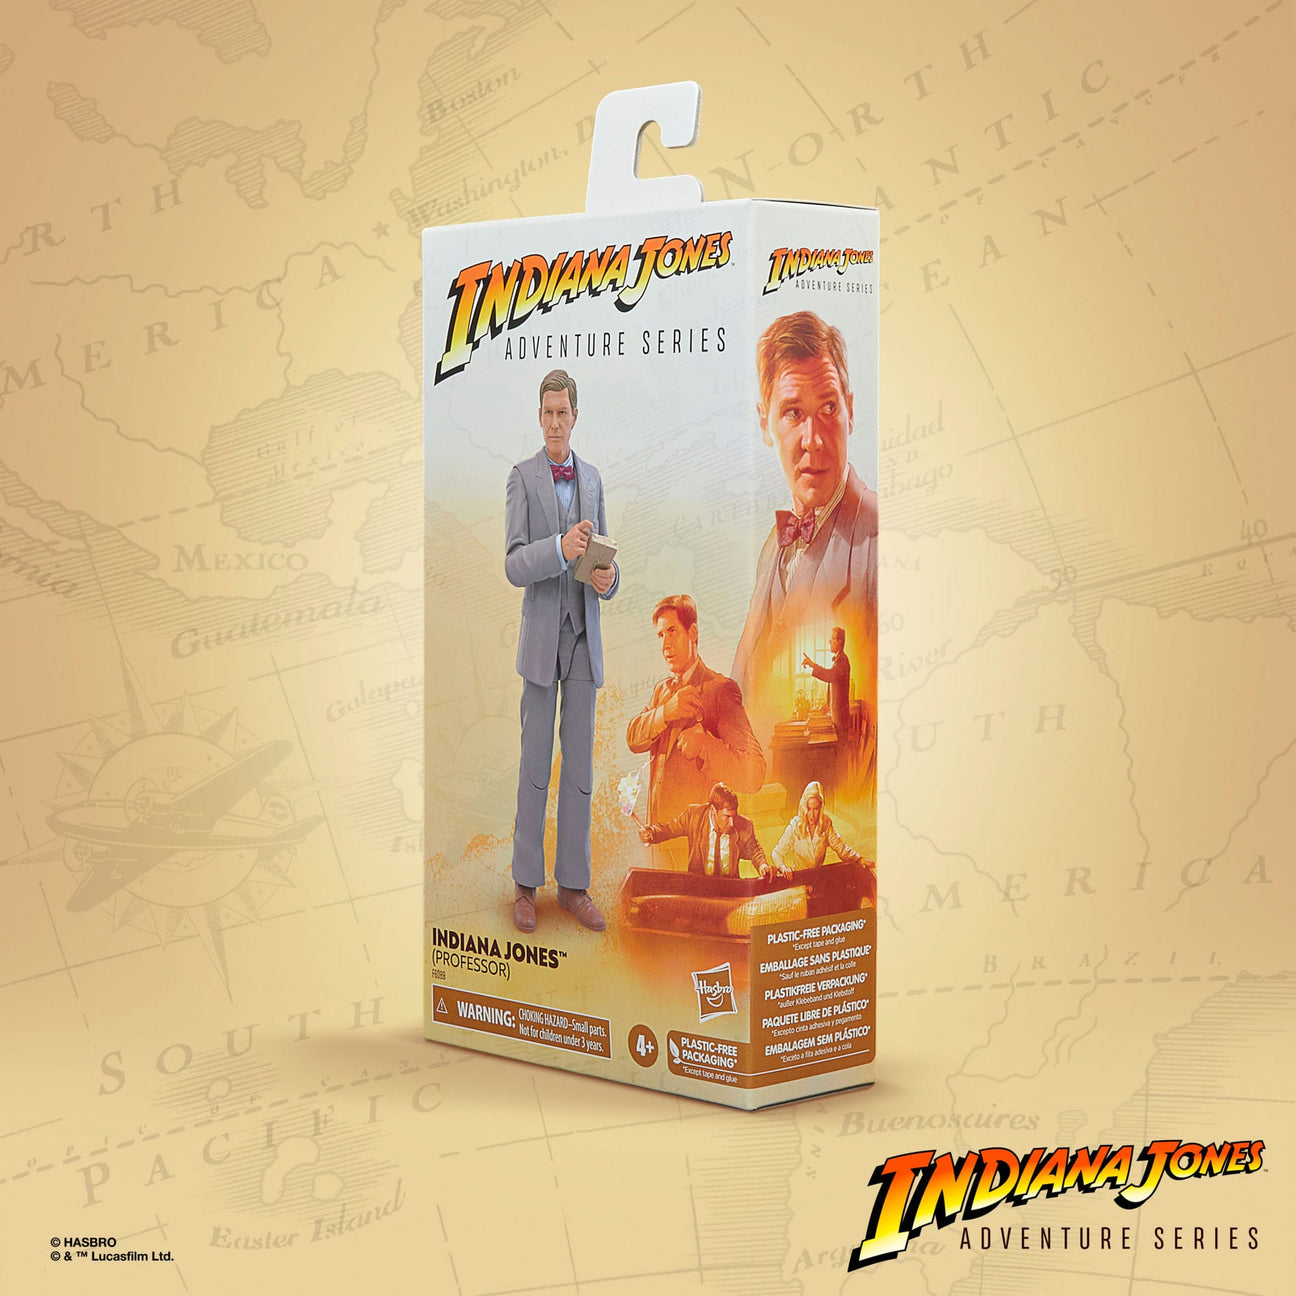 Indiana Jones Adventure Series: Indiana Jones (Professor, The Last Crusade)-Actionfiguren-Hasbro-Mighty Underground